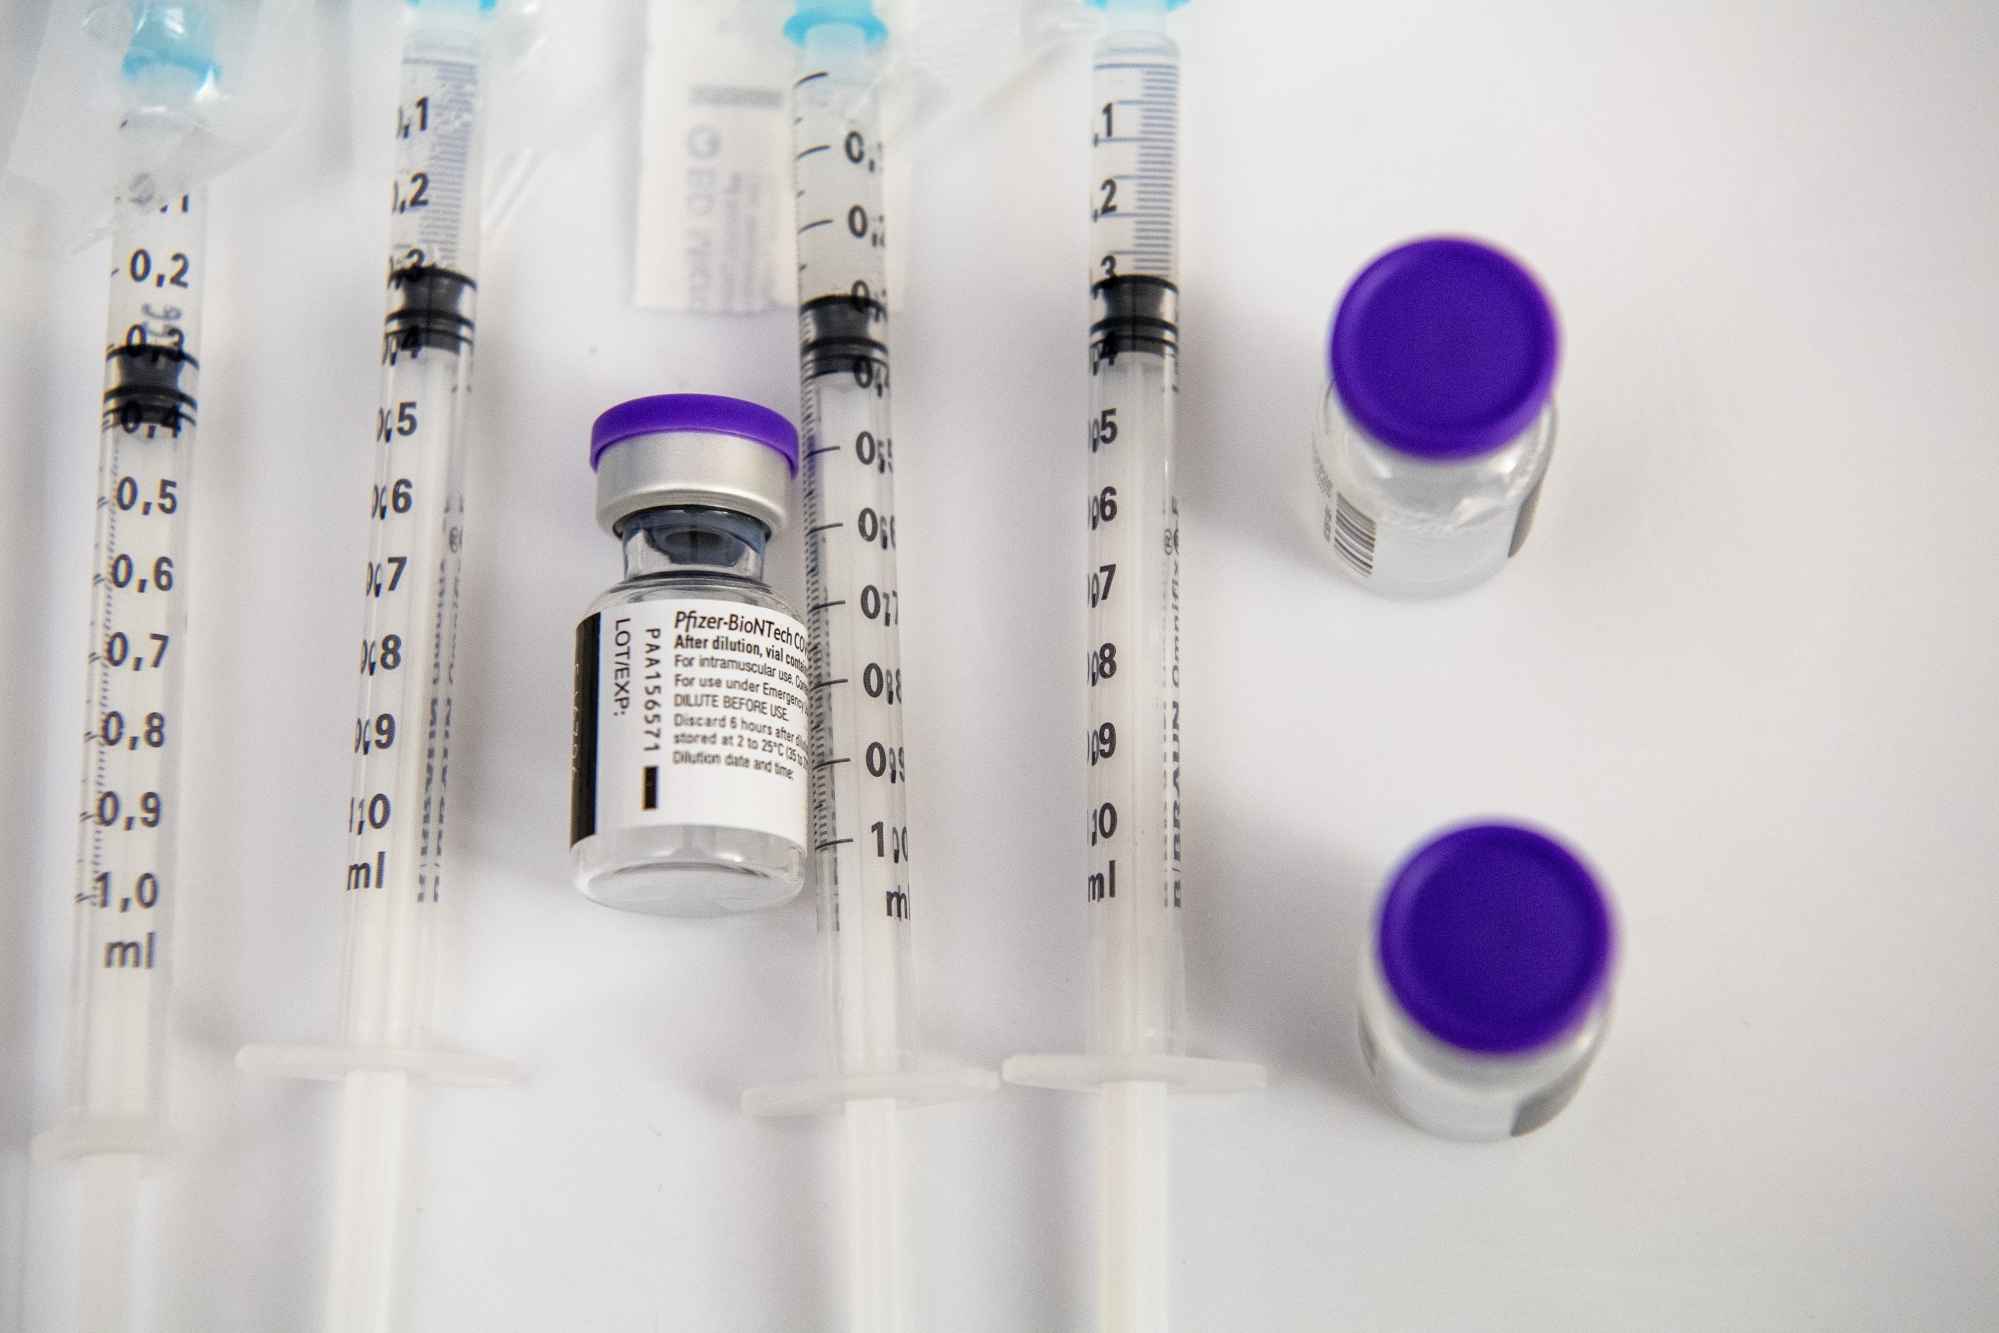 "En l’état actuel des connaissances, le vaccin contre le Covid-19 semble conserver toute son efficacité contre ce nouveau variant", disent les autorités sanitaires neuchâteloises.